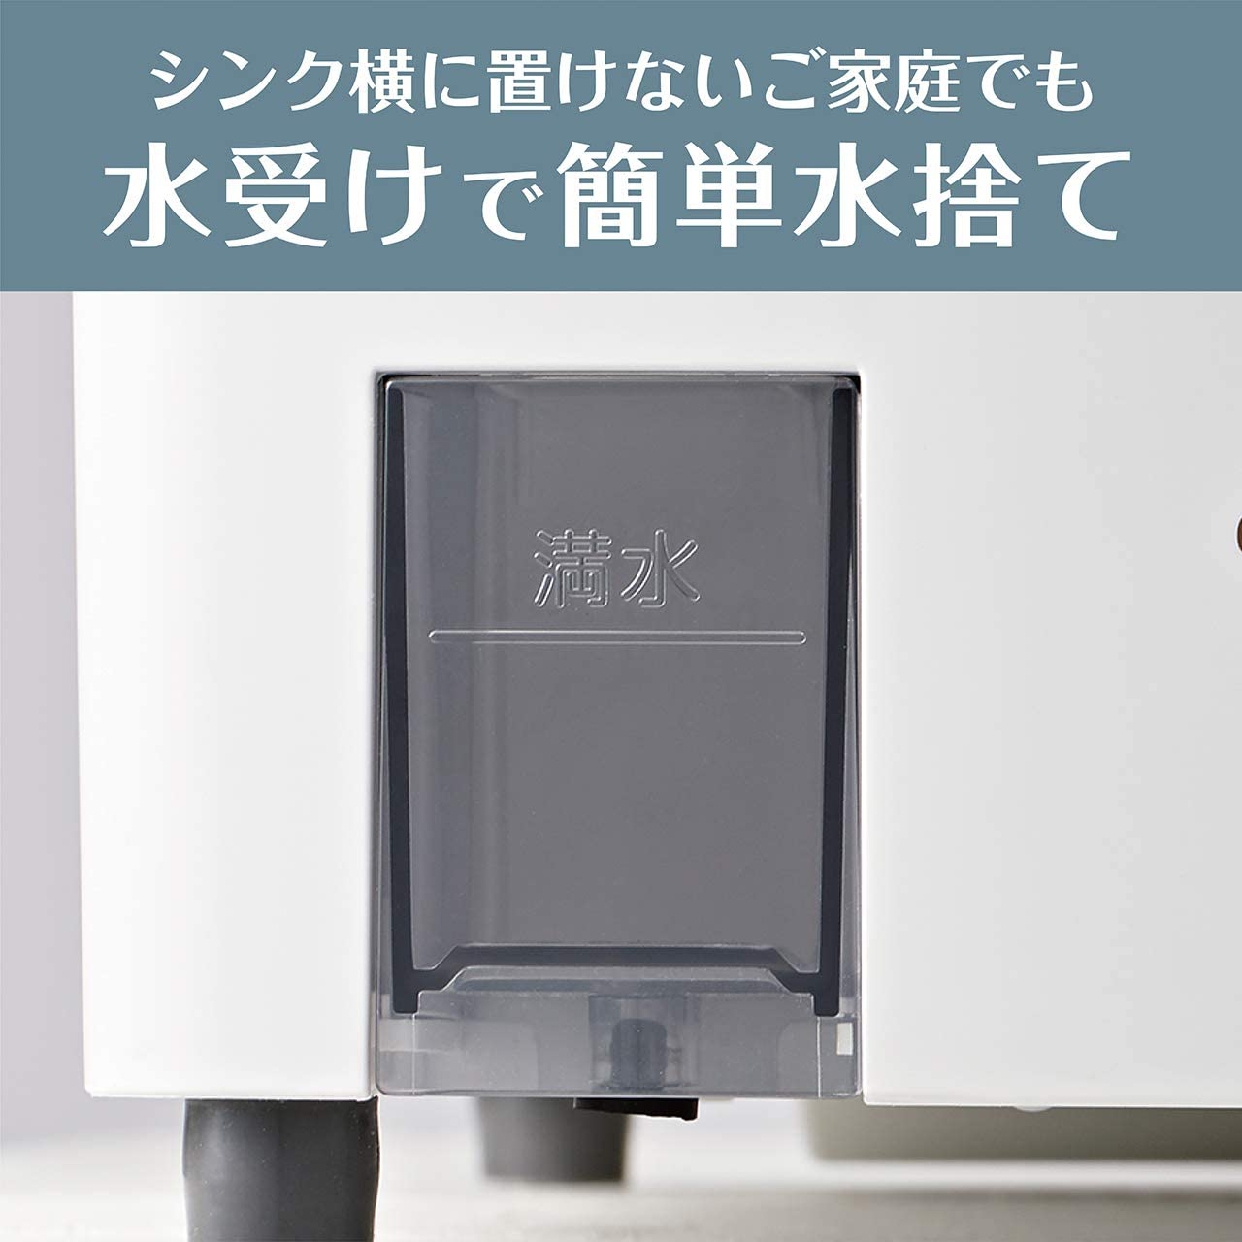 KOIZUMI(コイズミ) 食器乾燥器 KDE-0500の商品画像8 